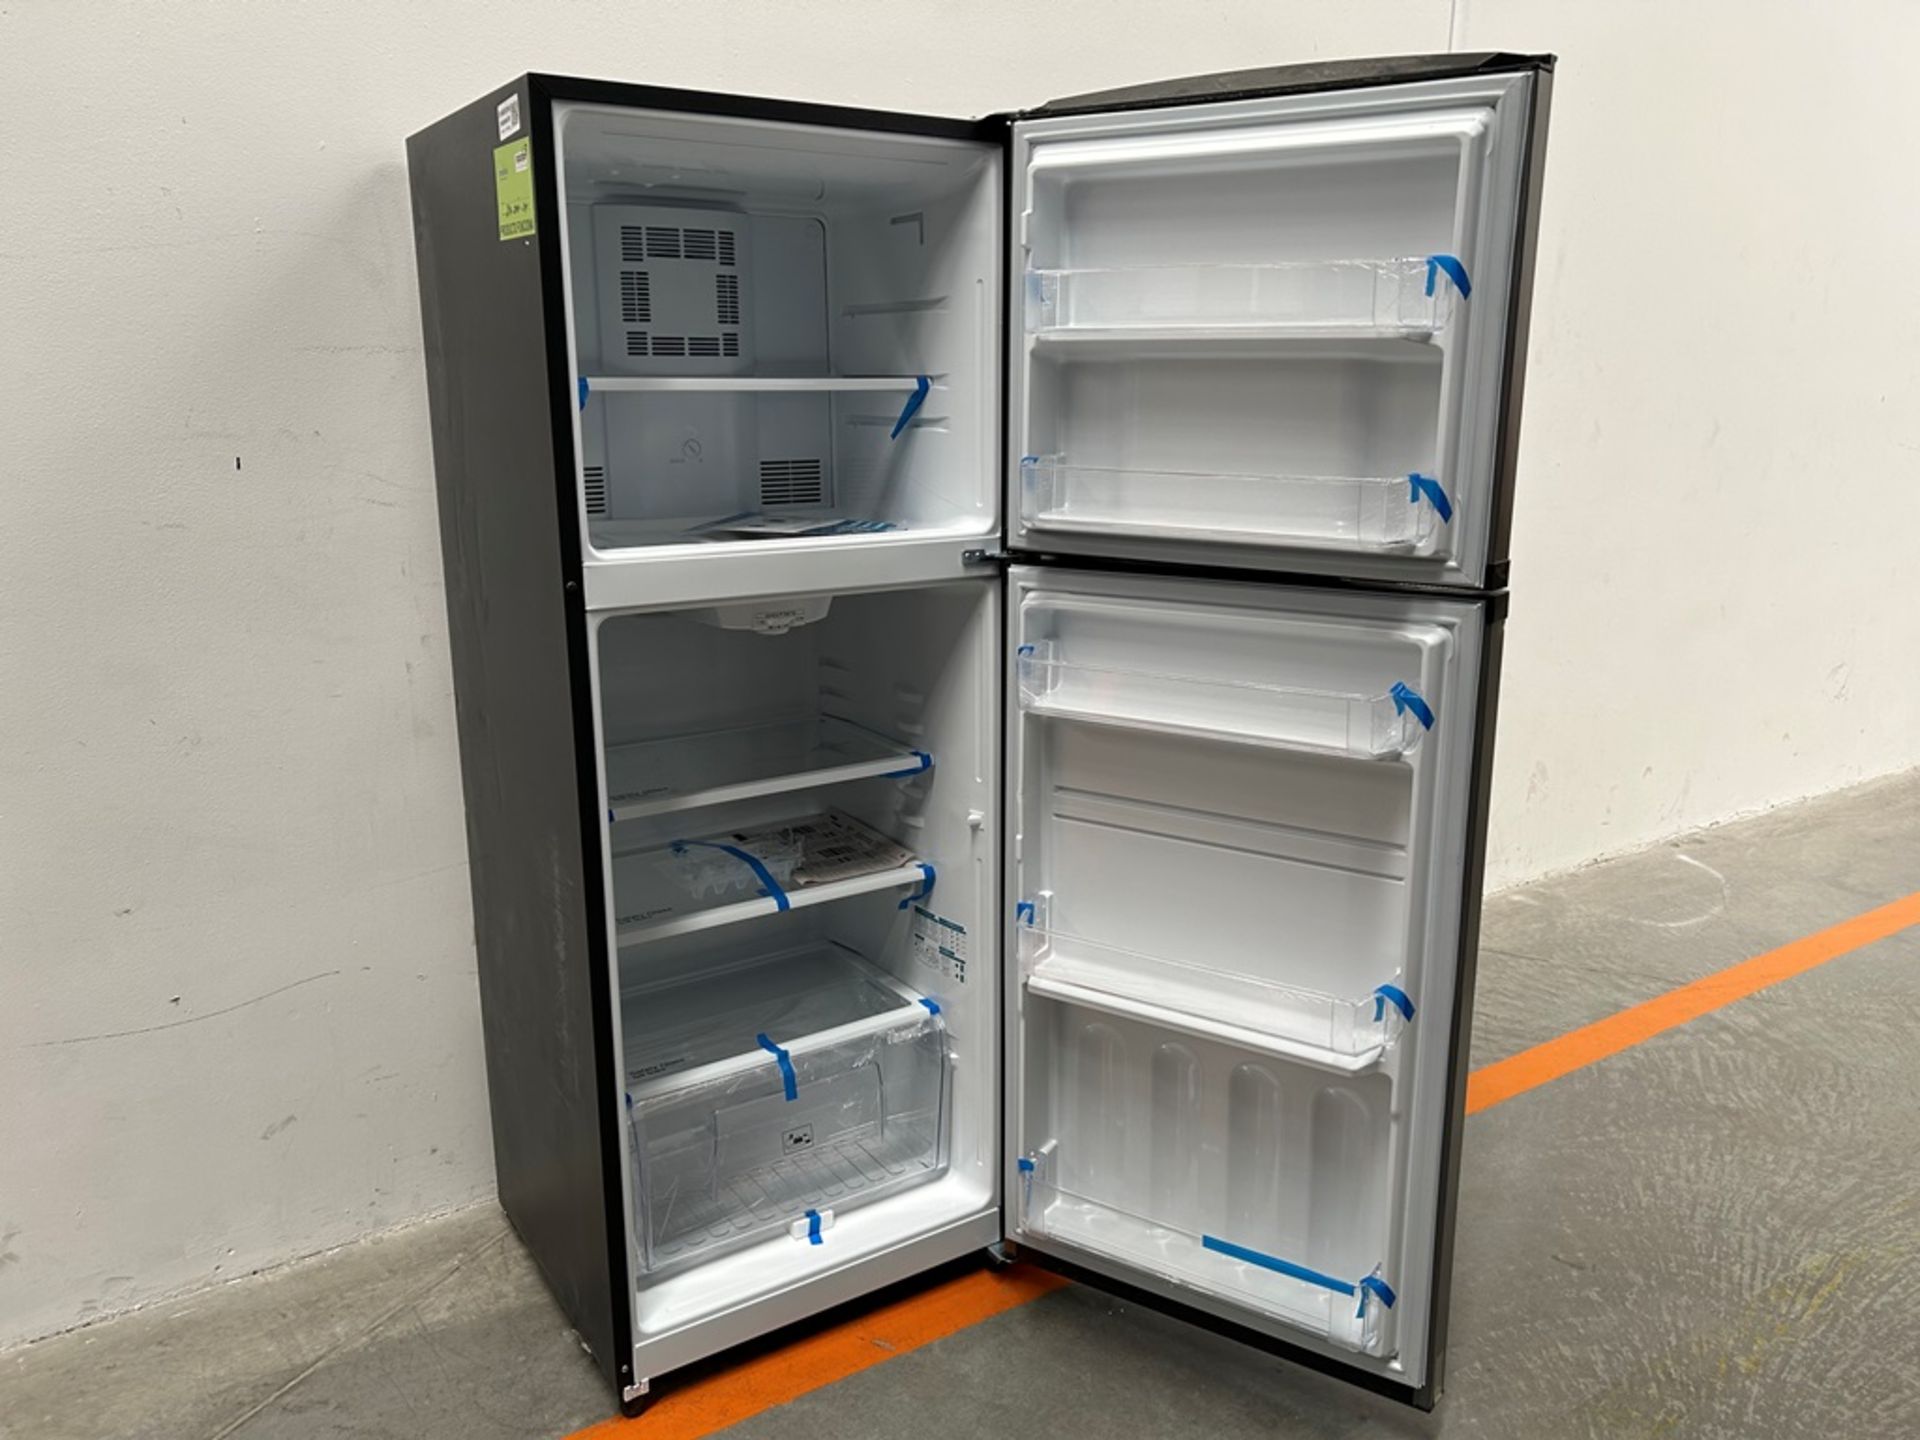 Lote de 2 refrigeradores contiene: 1 refrigerador Marca MABE, Modelo RME360PVMRM, Serie 01988, Colo - Image 4 of 18